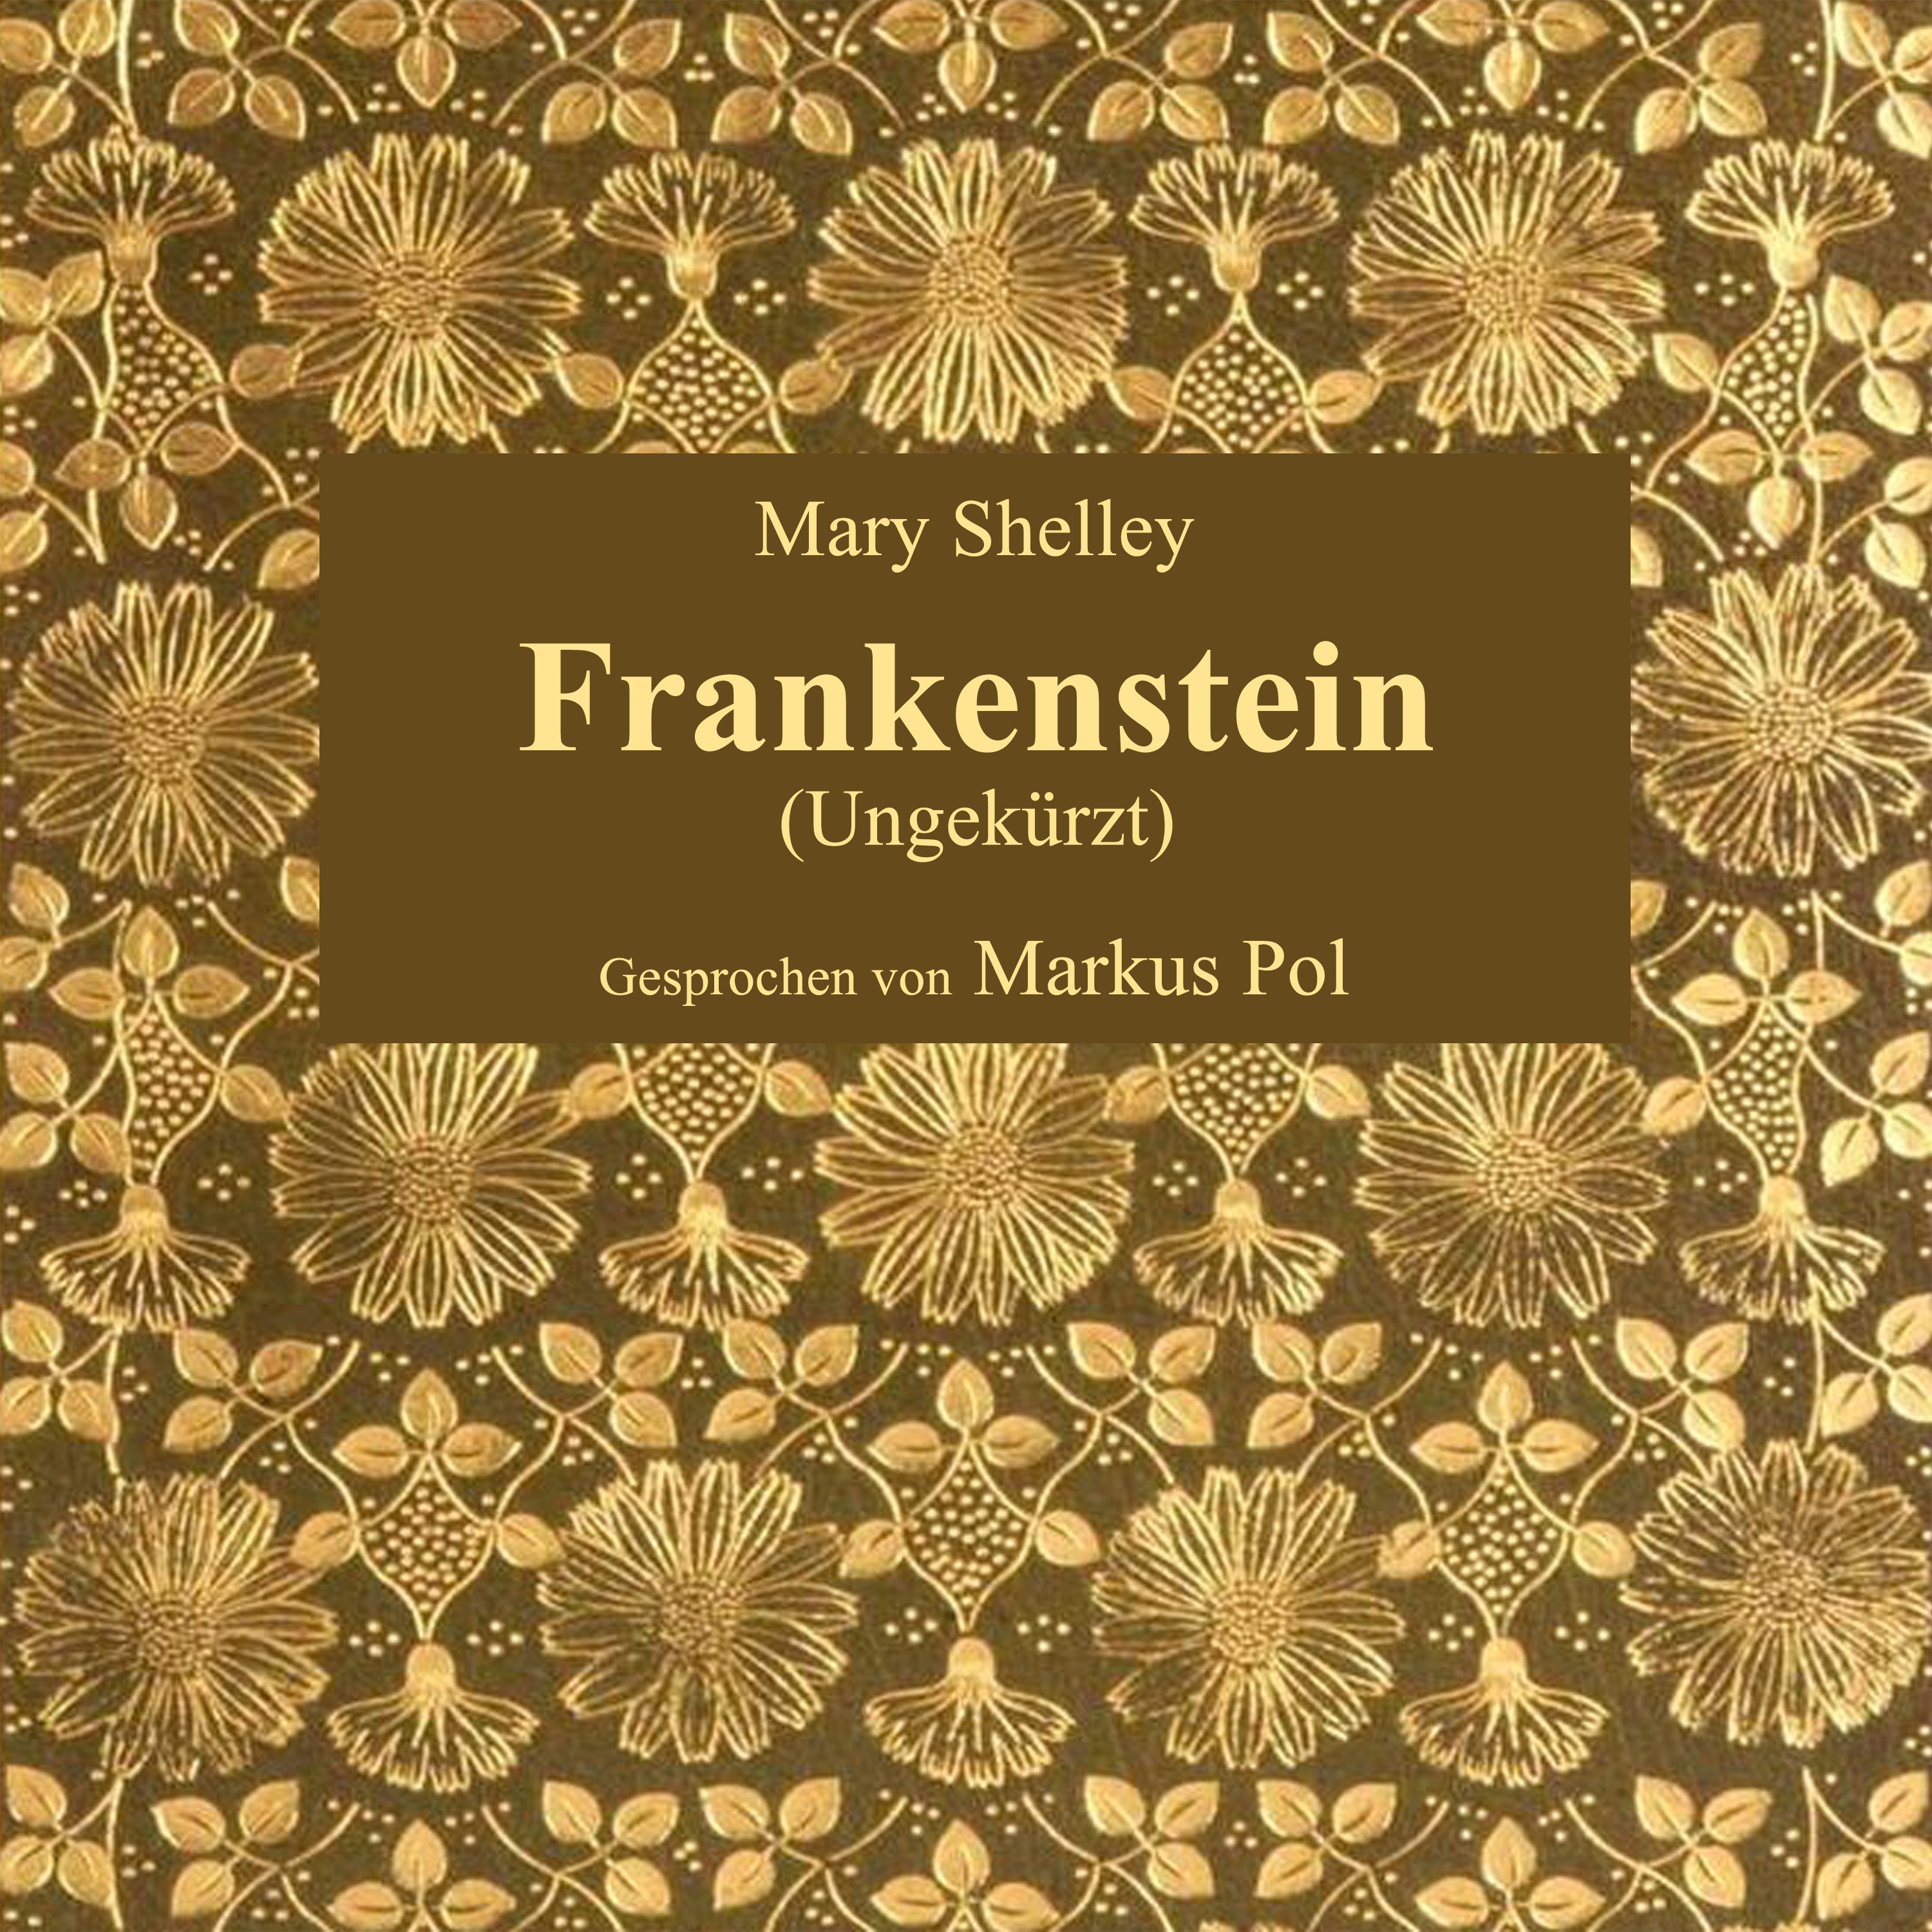 Kapitel 14: Frankenstein (Teil 22)